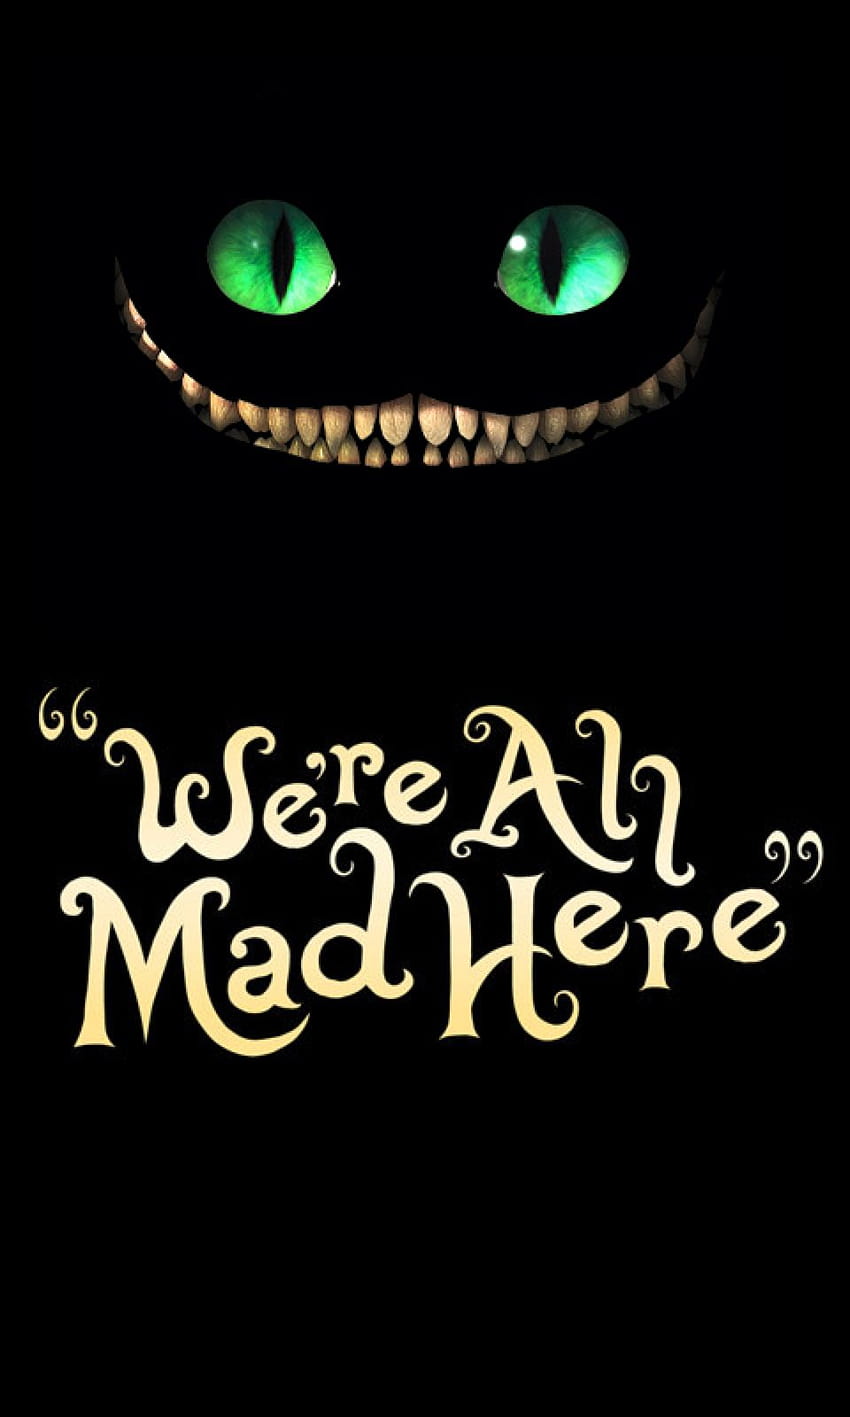 We Re All Mad Here, gepostet von Sarah Cunningham, waren hier alle verrückt HD-Handy-Hintergrundbild